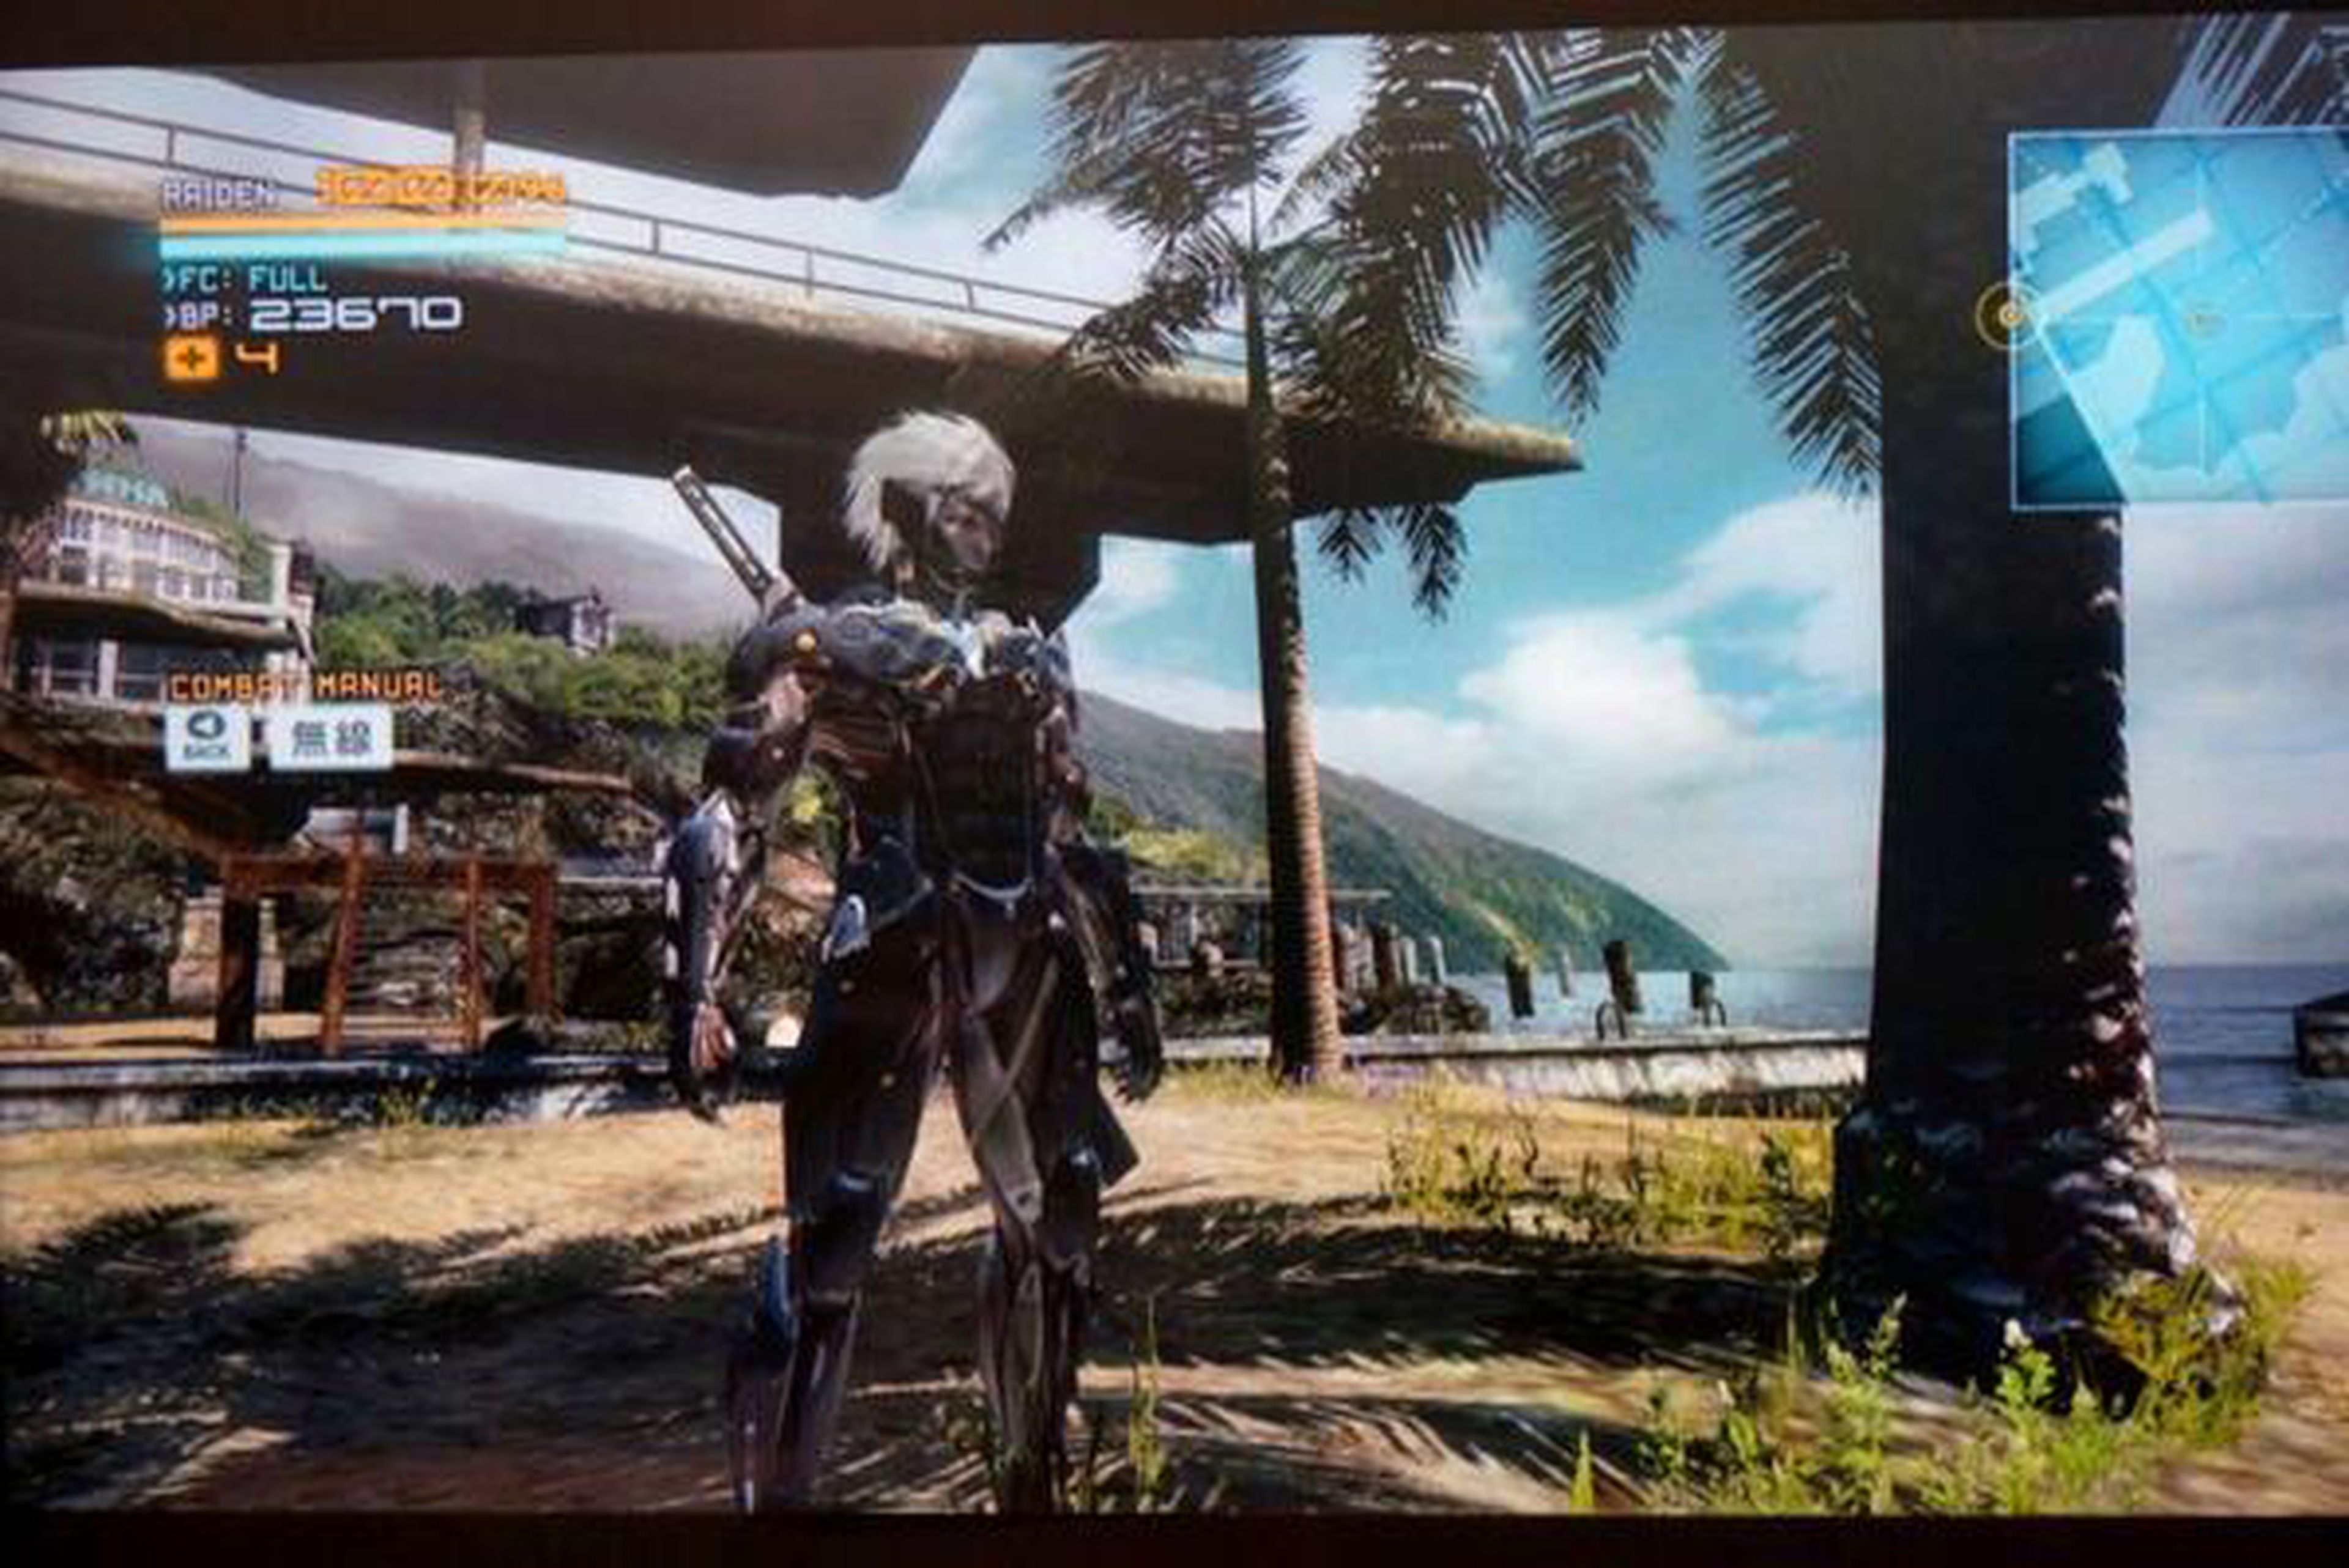 Metal Gear Rising luce bien en PC